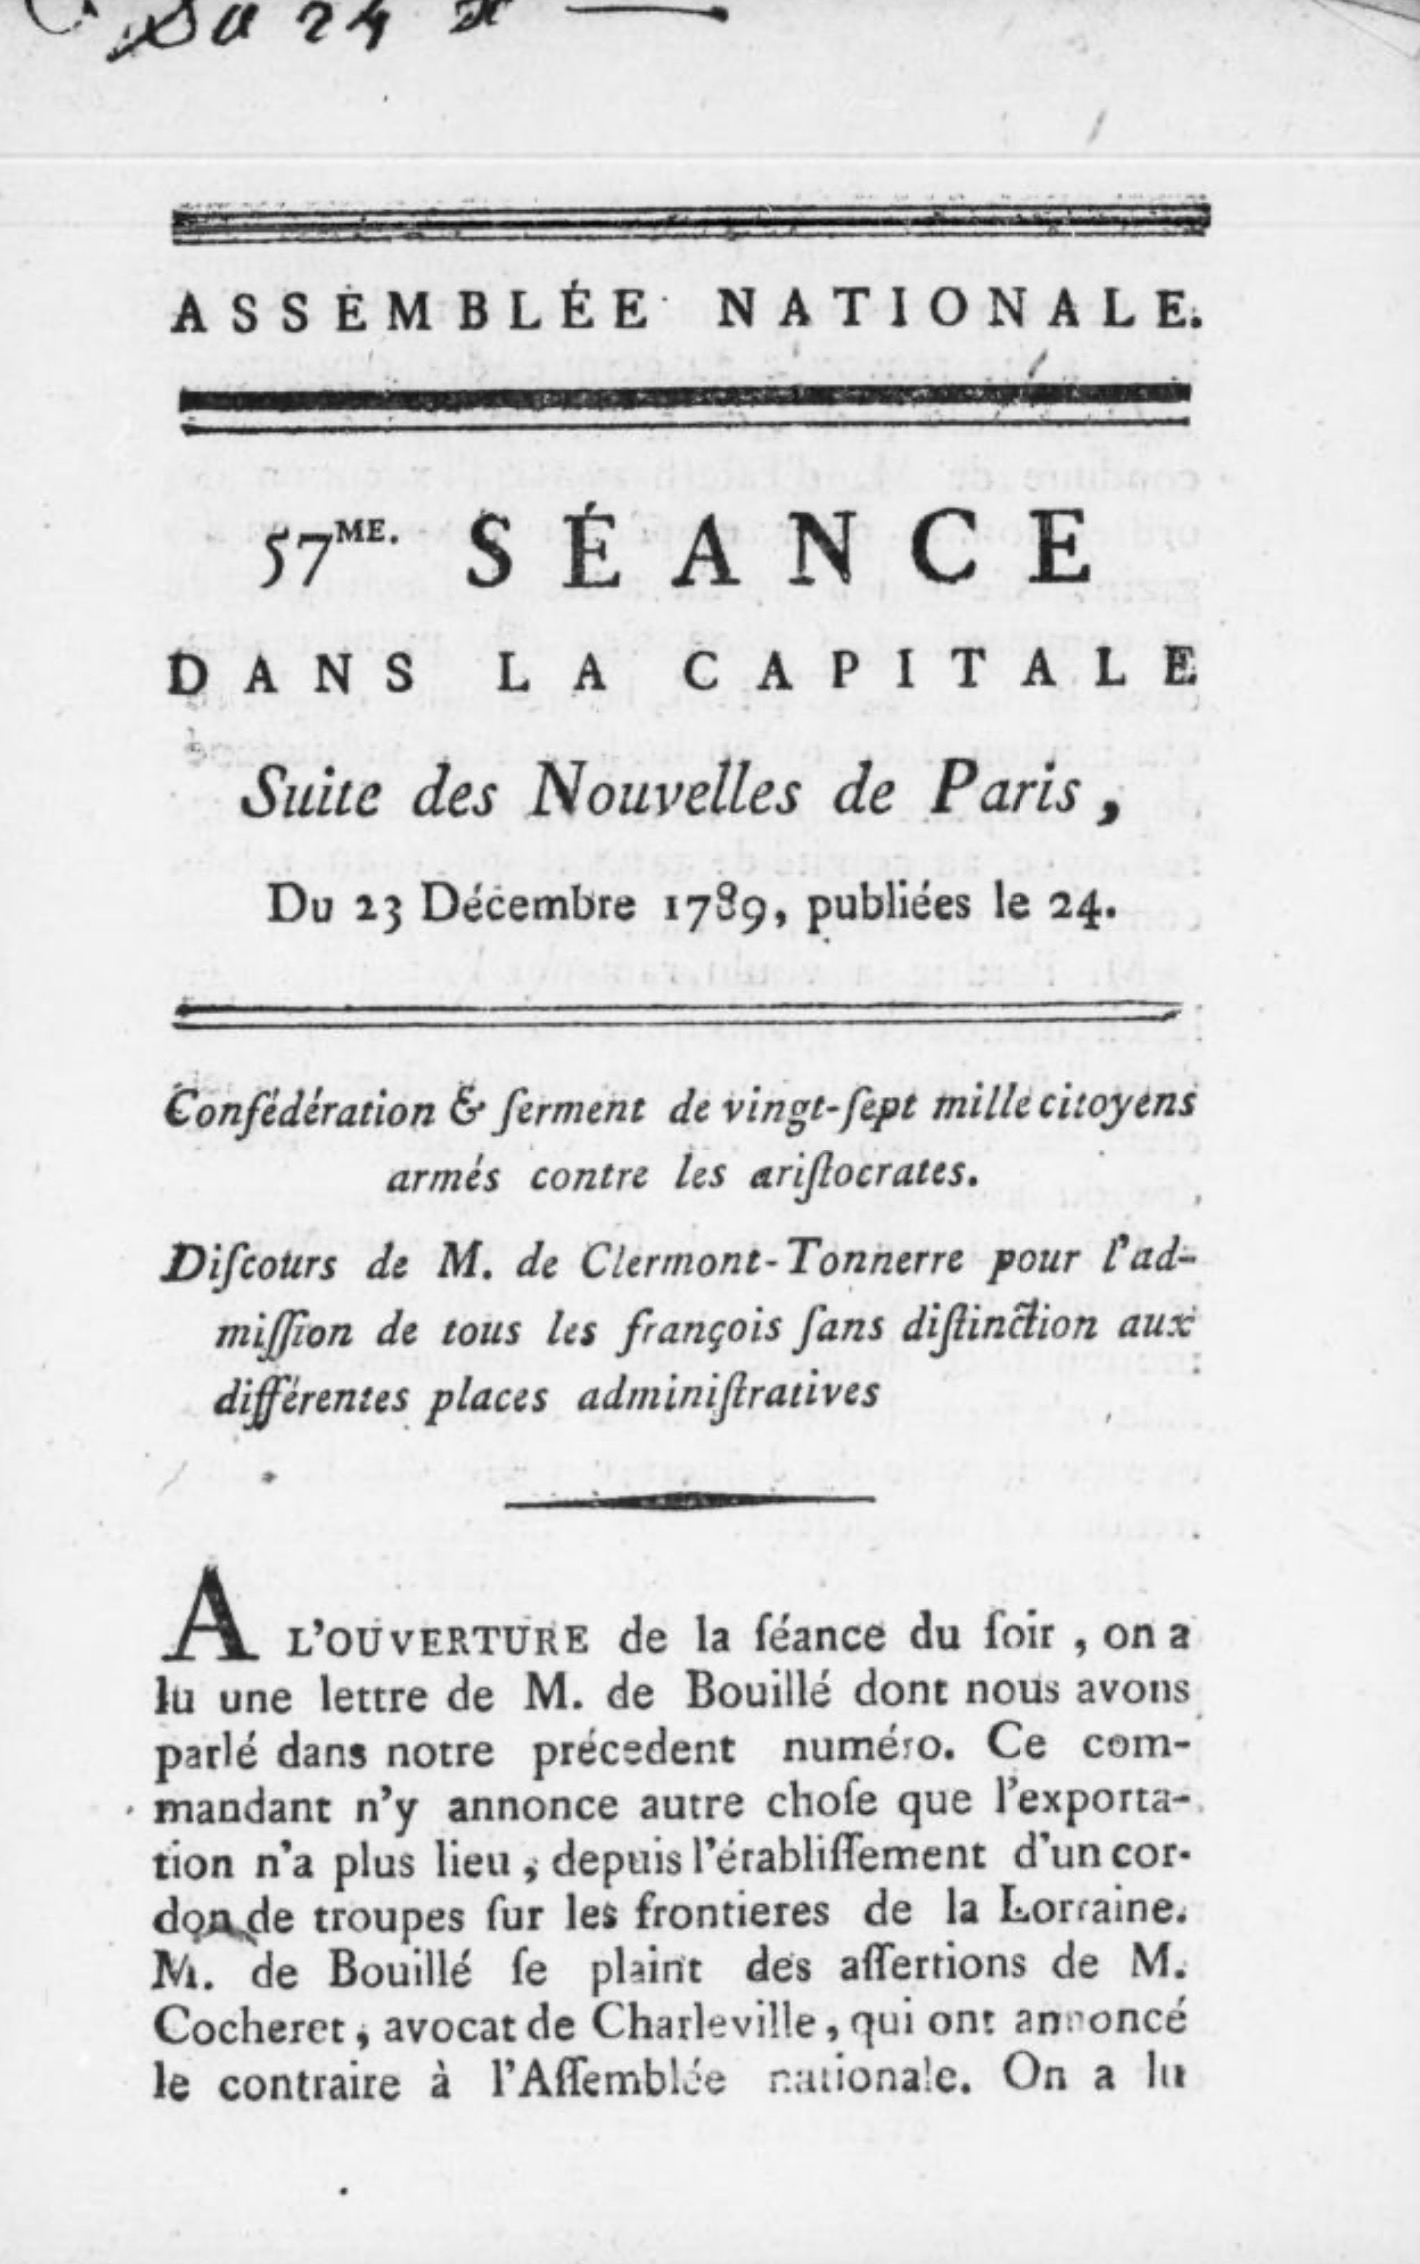 Assemblée nationale. Séance et suite des Nouvelles de Versailles (1789-1790)